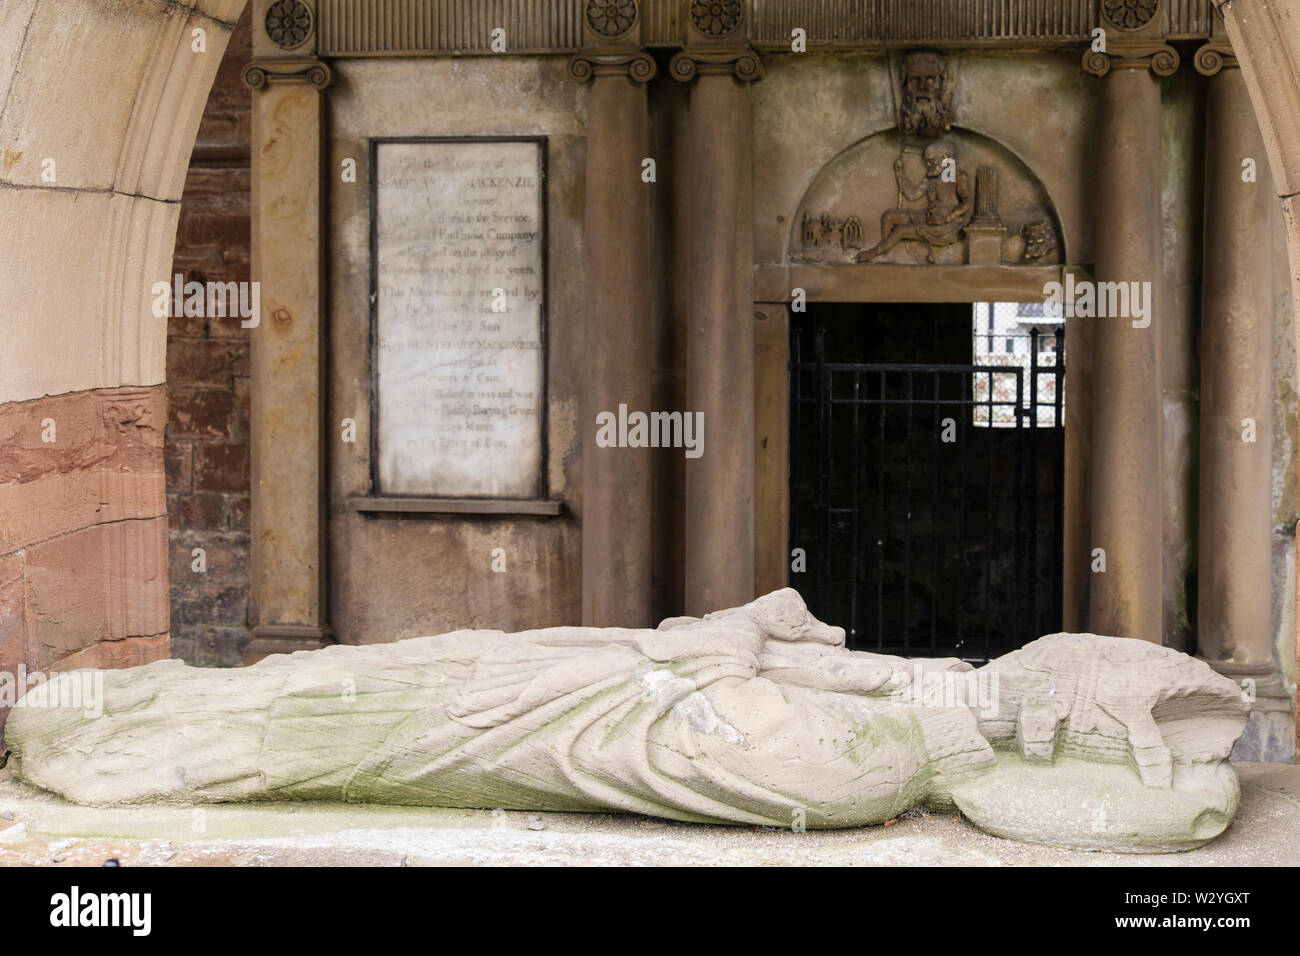 La tumba de la Condesa Euphemia de Ross en la Catedral del siglo xiii ruinas. Fortrose, Black Isle, Ross y Cromarty, Highland, Escocia, Reino Unido, Gran Bretaña Foto de stock